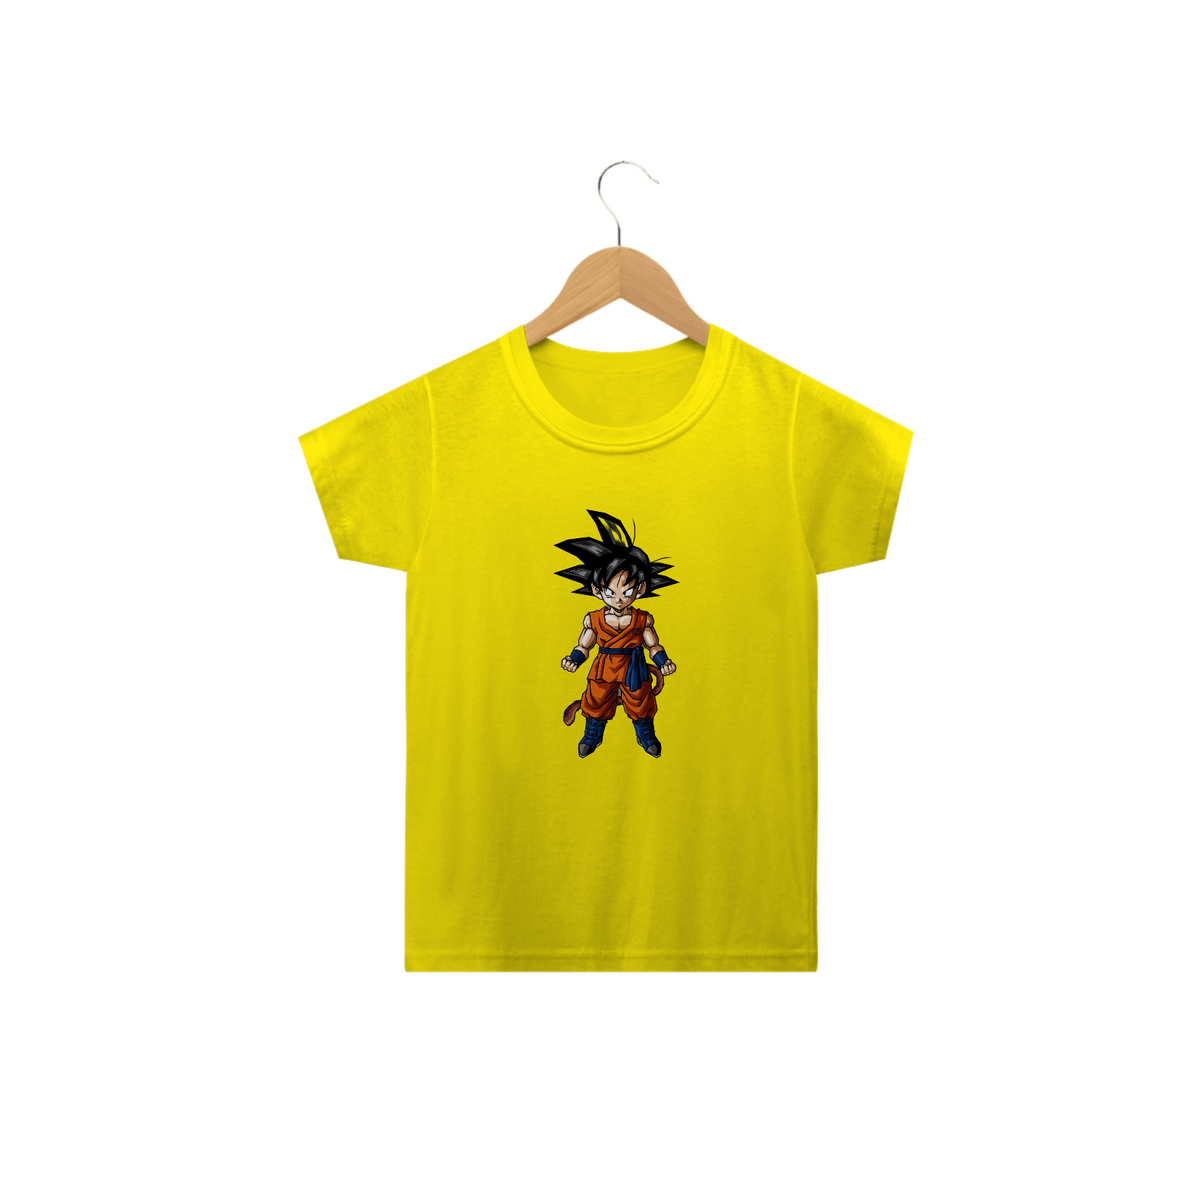 Nome do produto: Camisetas Infantis - GoKu